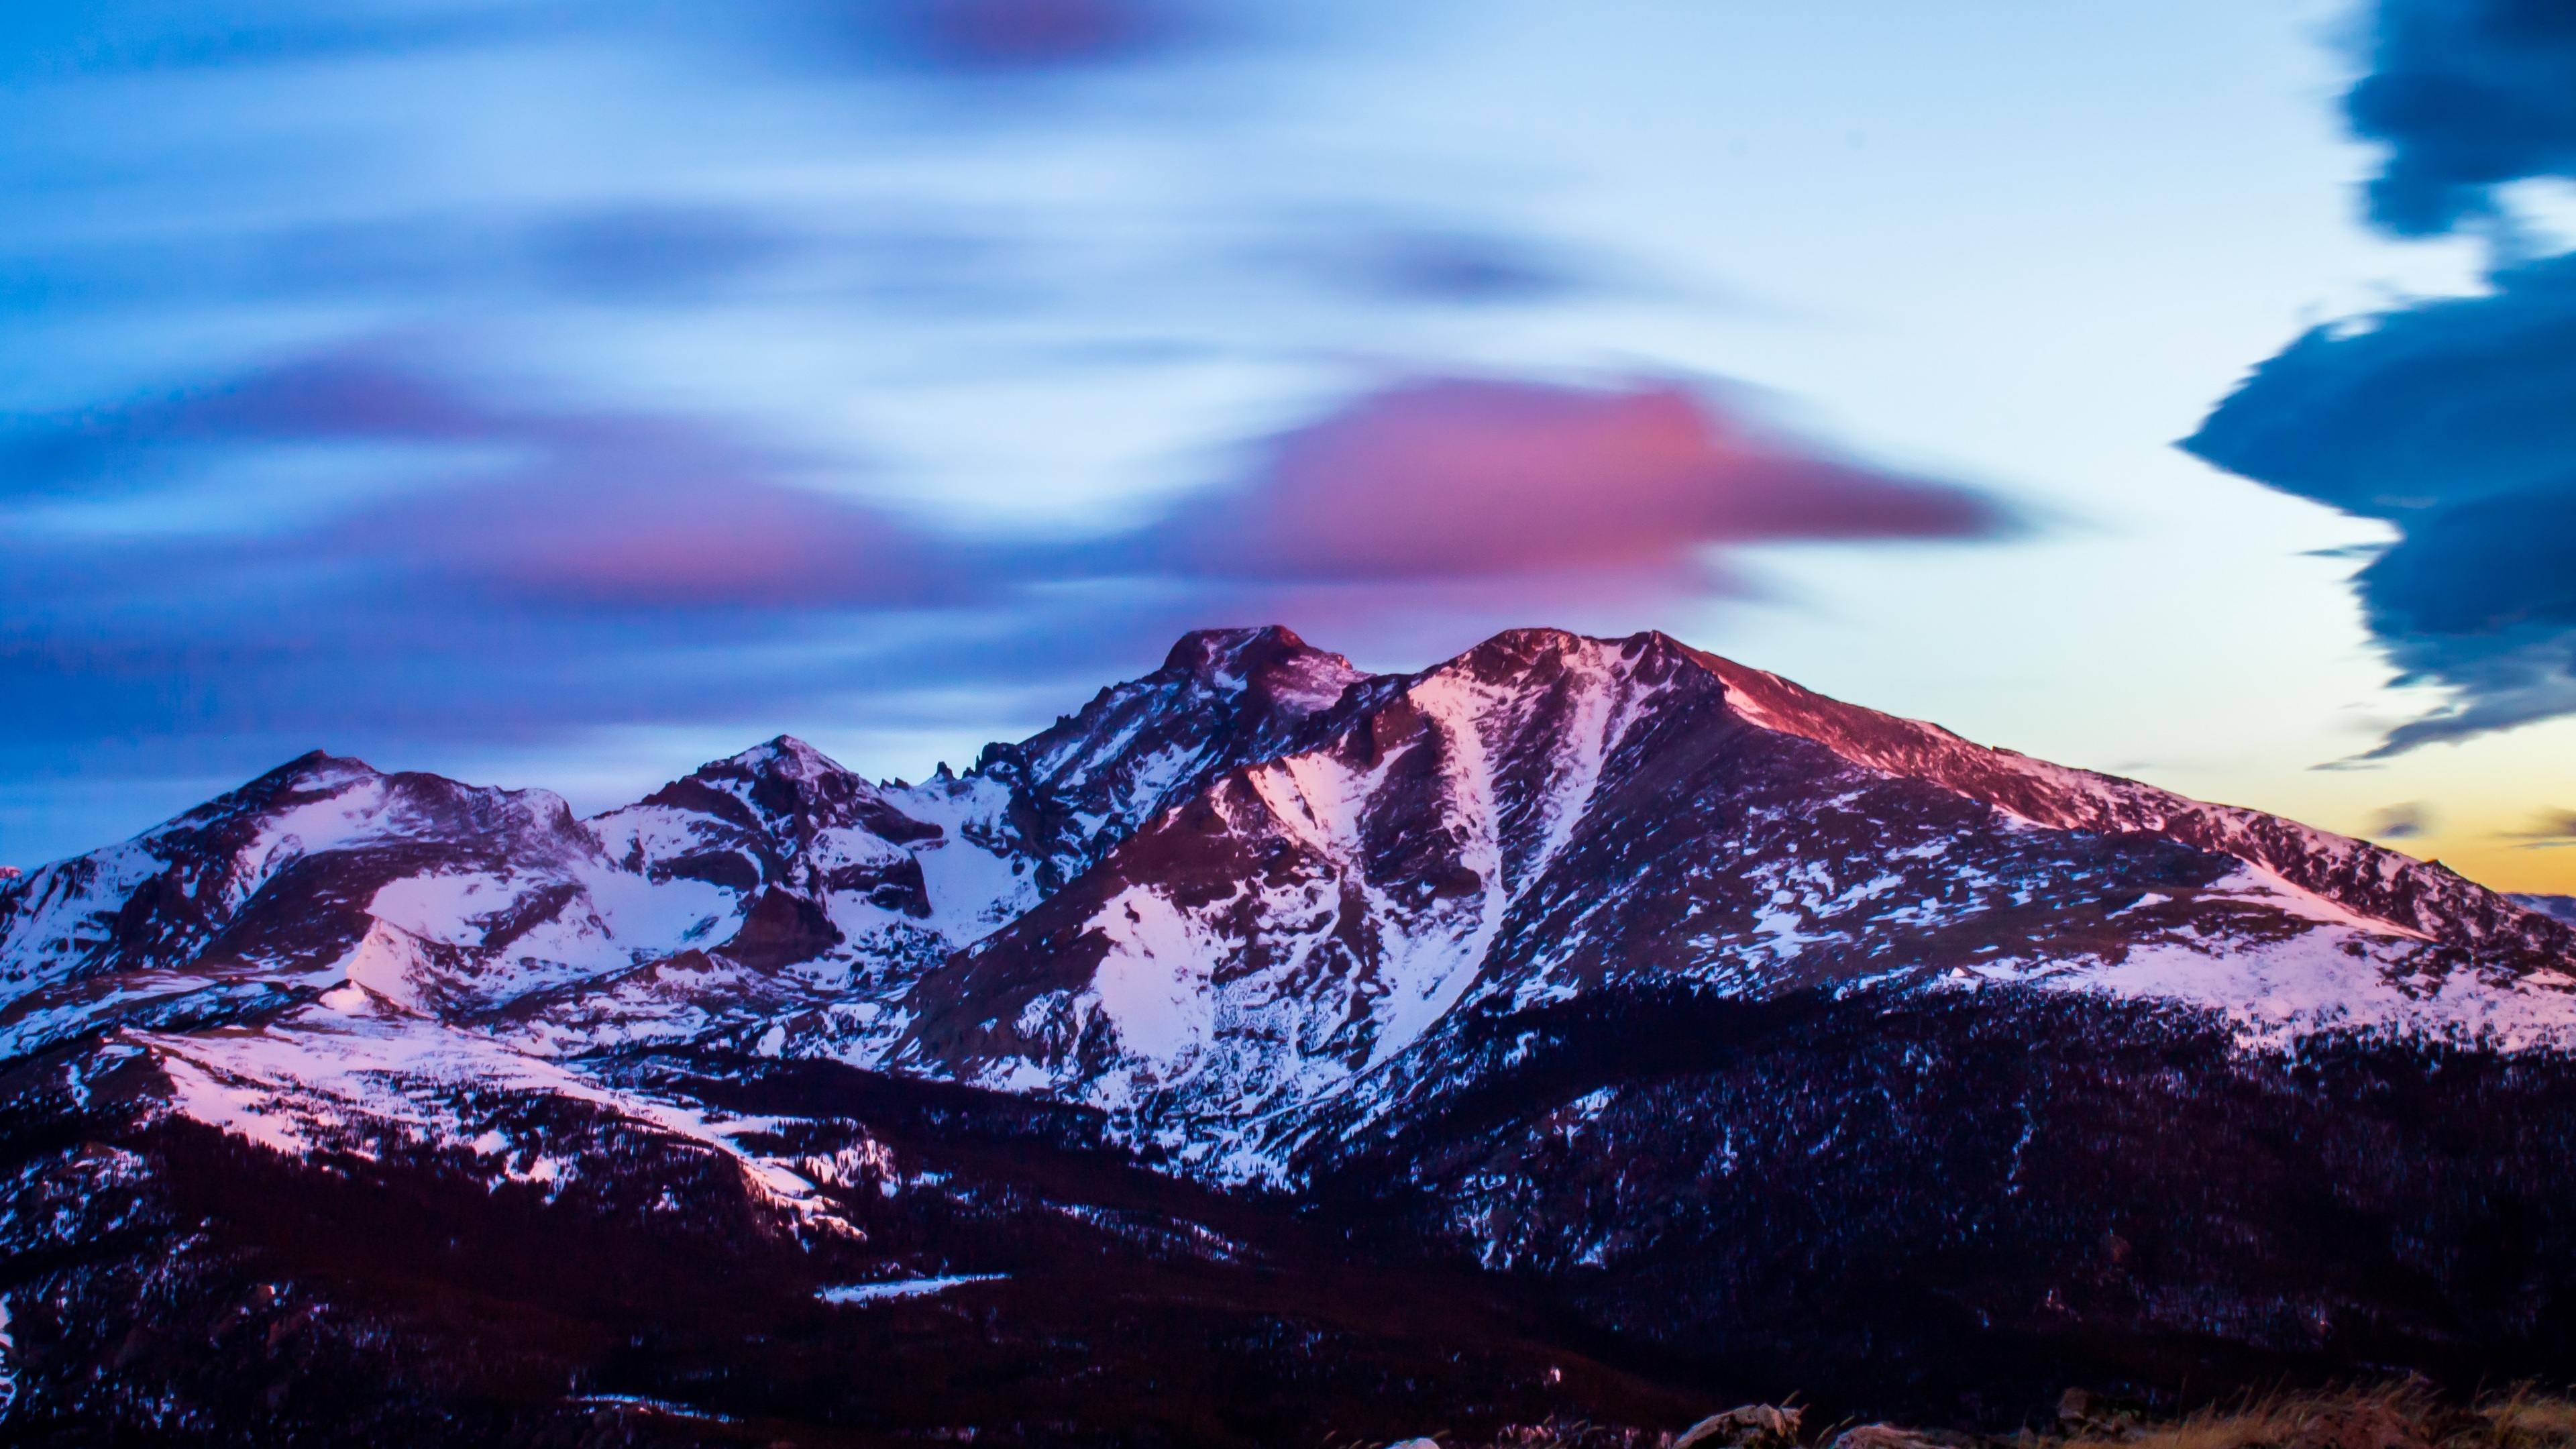 Beautiful View Of Mountains 4k - Mountain Peak At Sunset - HD Wallpaper 